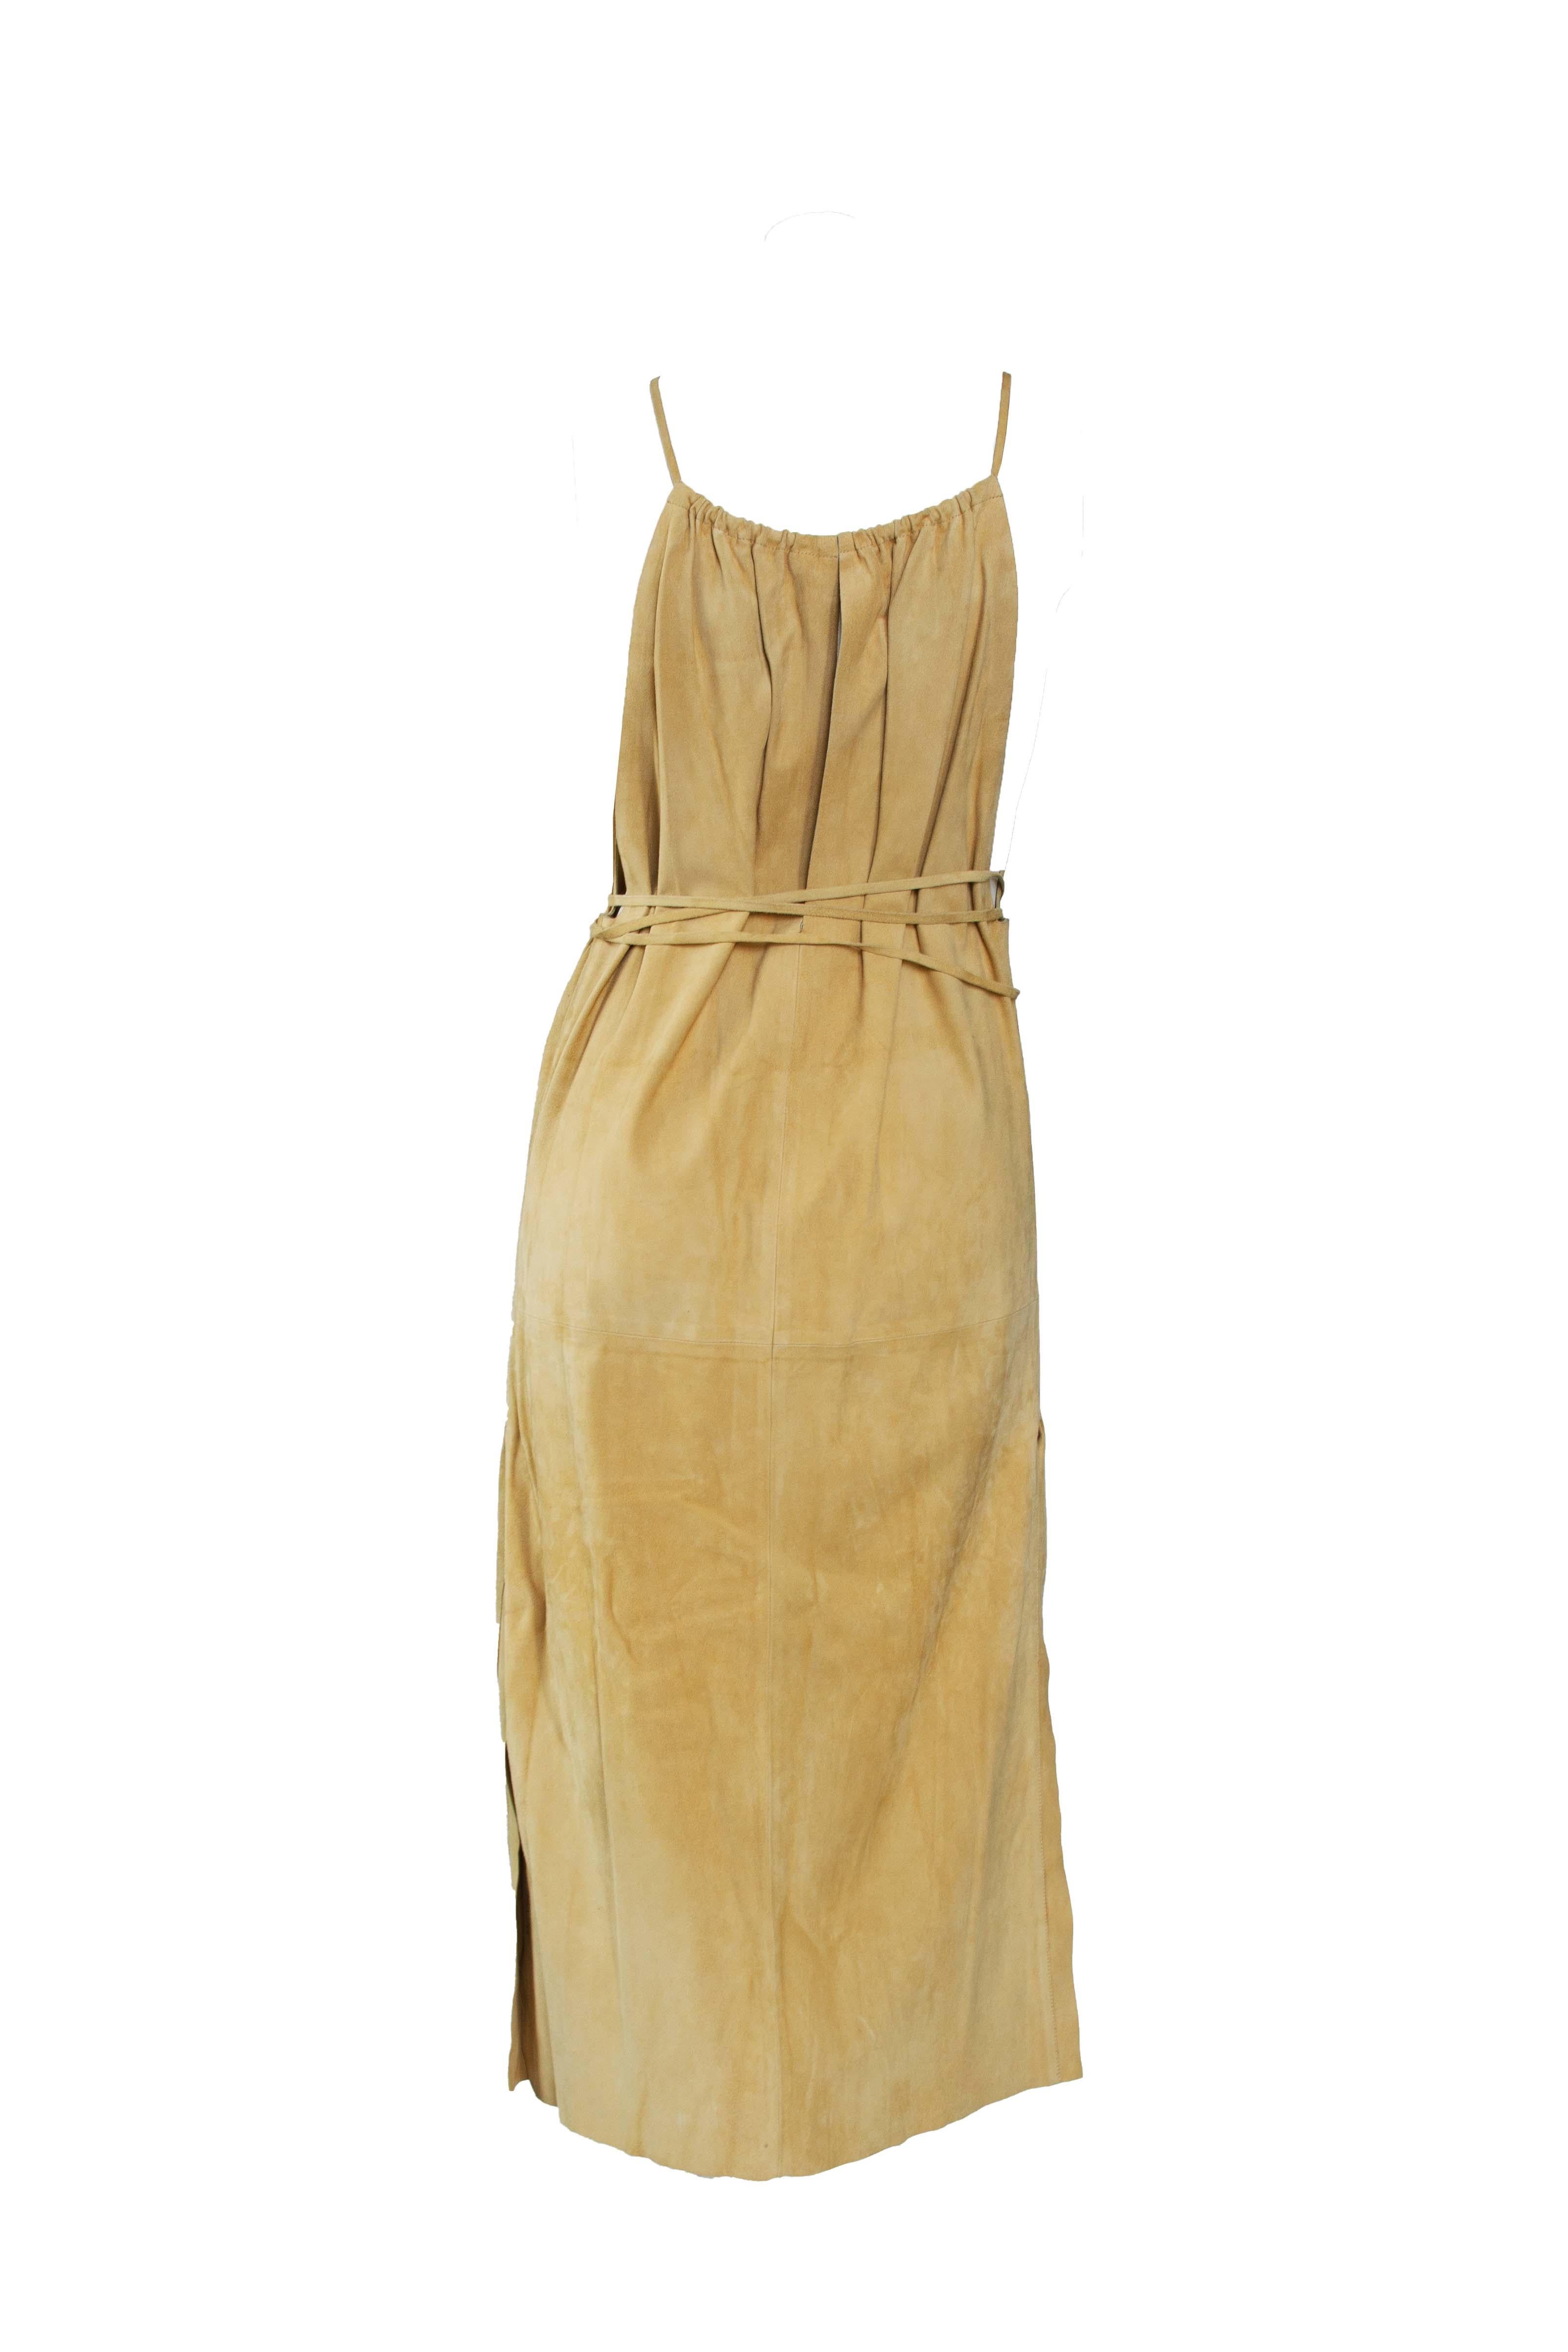 F/S 2002 Gucci by Tom Ford Laufsteg Werbe-Kleid aus Wildleder mit Herzgürtel aus Wildleder (Braun) im Angebot